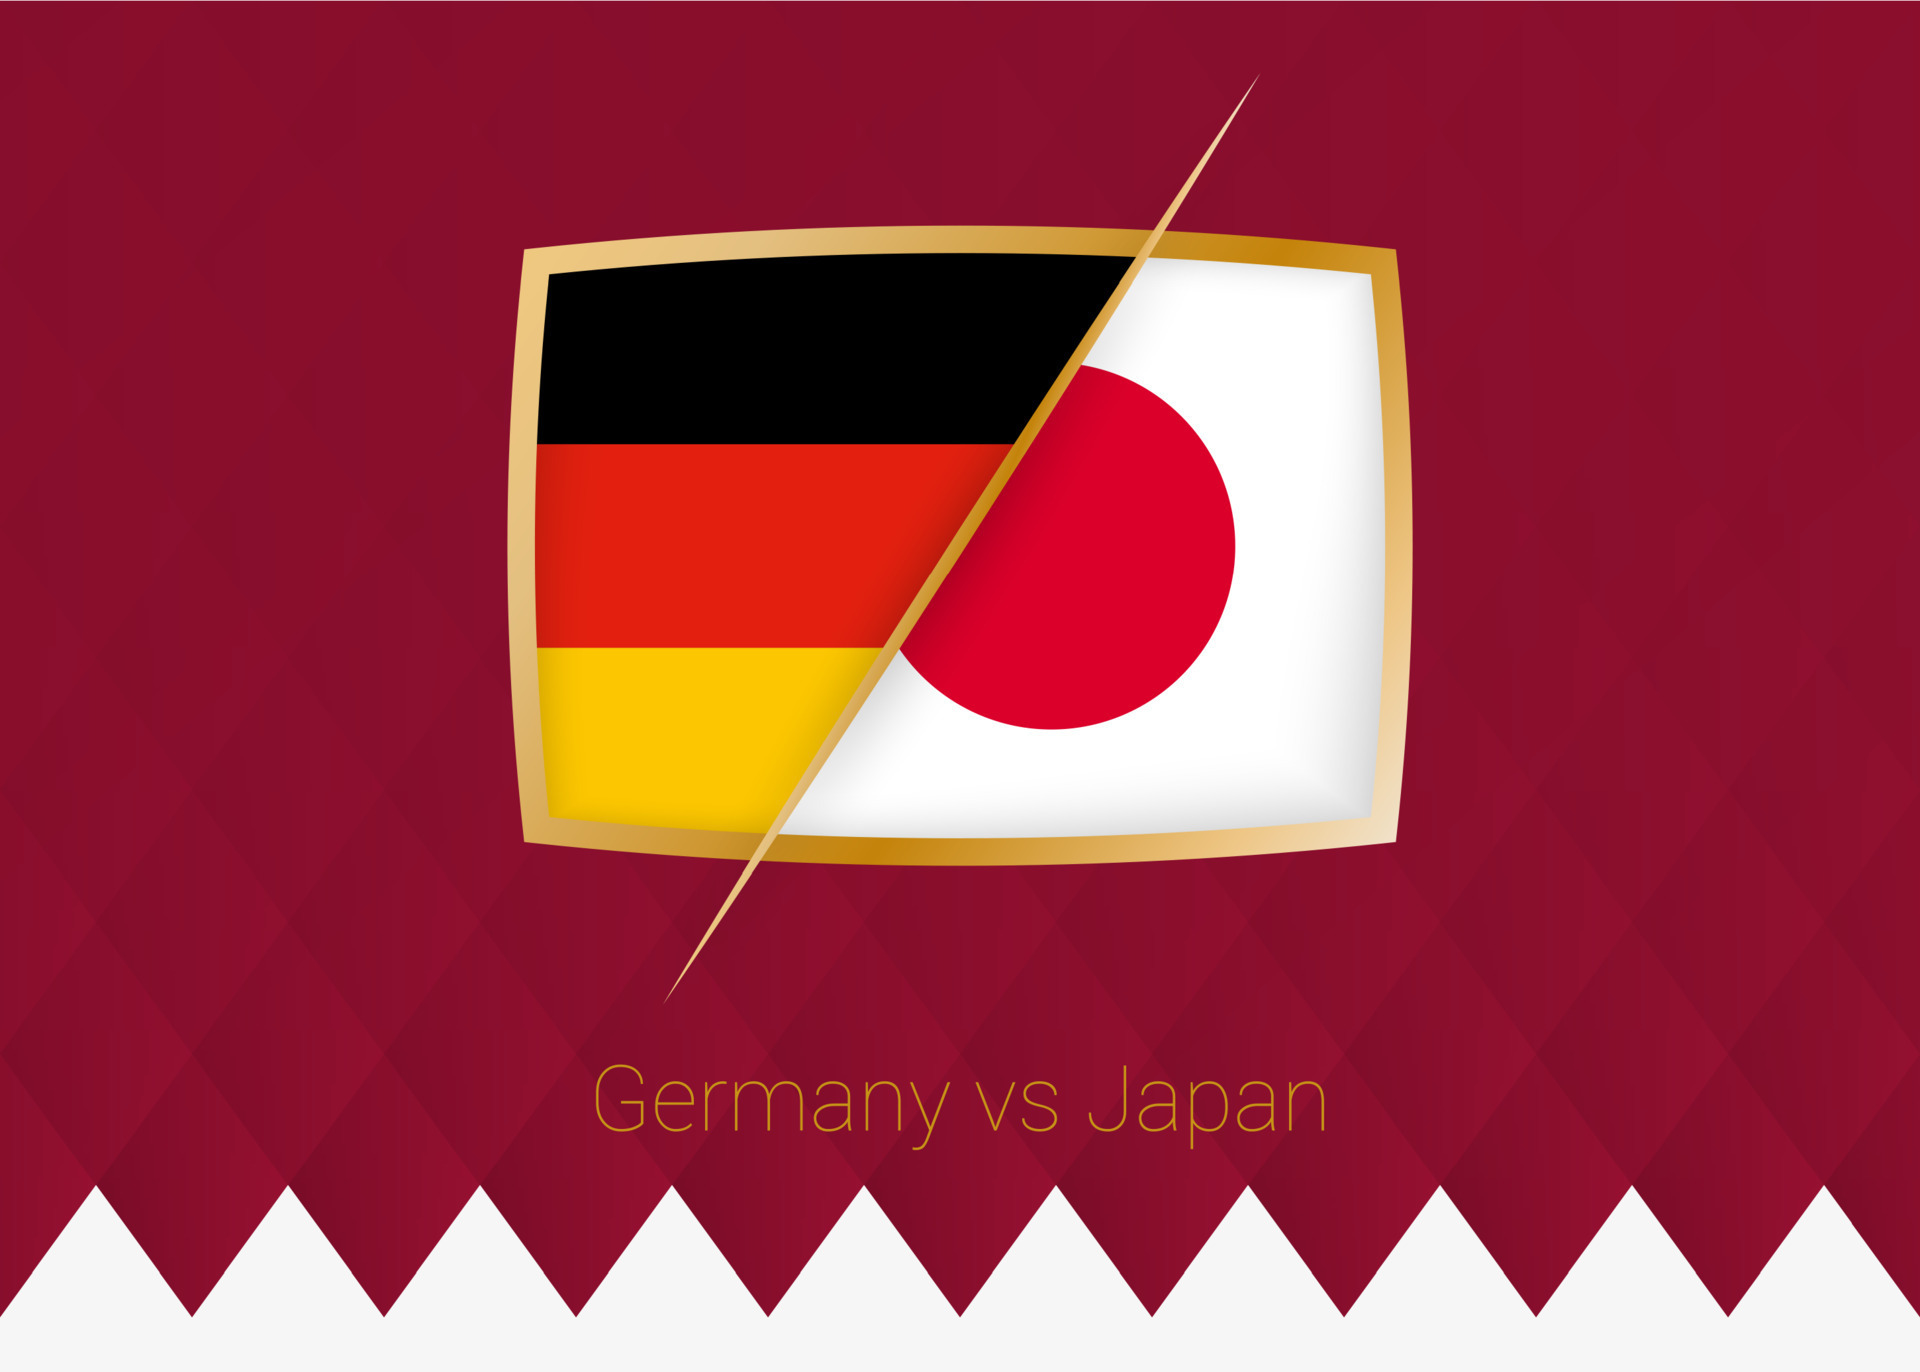 Trận đấu kinh điển giữa Đức và Nhật Bản - đây là cuộc chiến giữa hai quốc gia với lịch sử phát triển bóng đá vô cùng tiên tiến và thành công. Đừng bỏ lỡ cơ hội xem trận đấu đầy kịch tính này để đồng hành cùng đội bóng mình yêu thích.